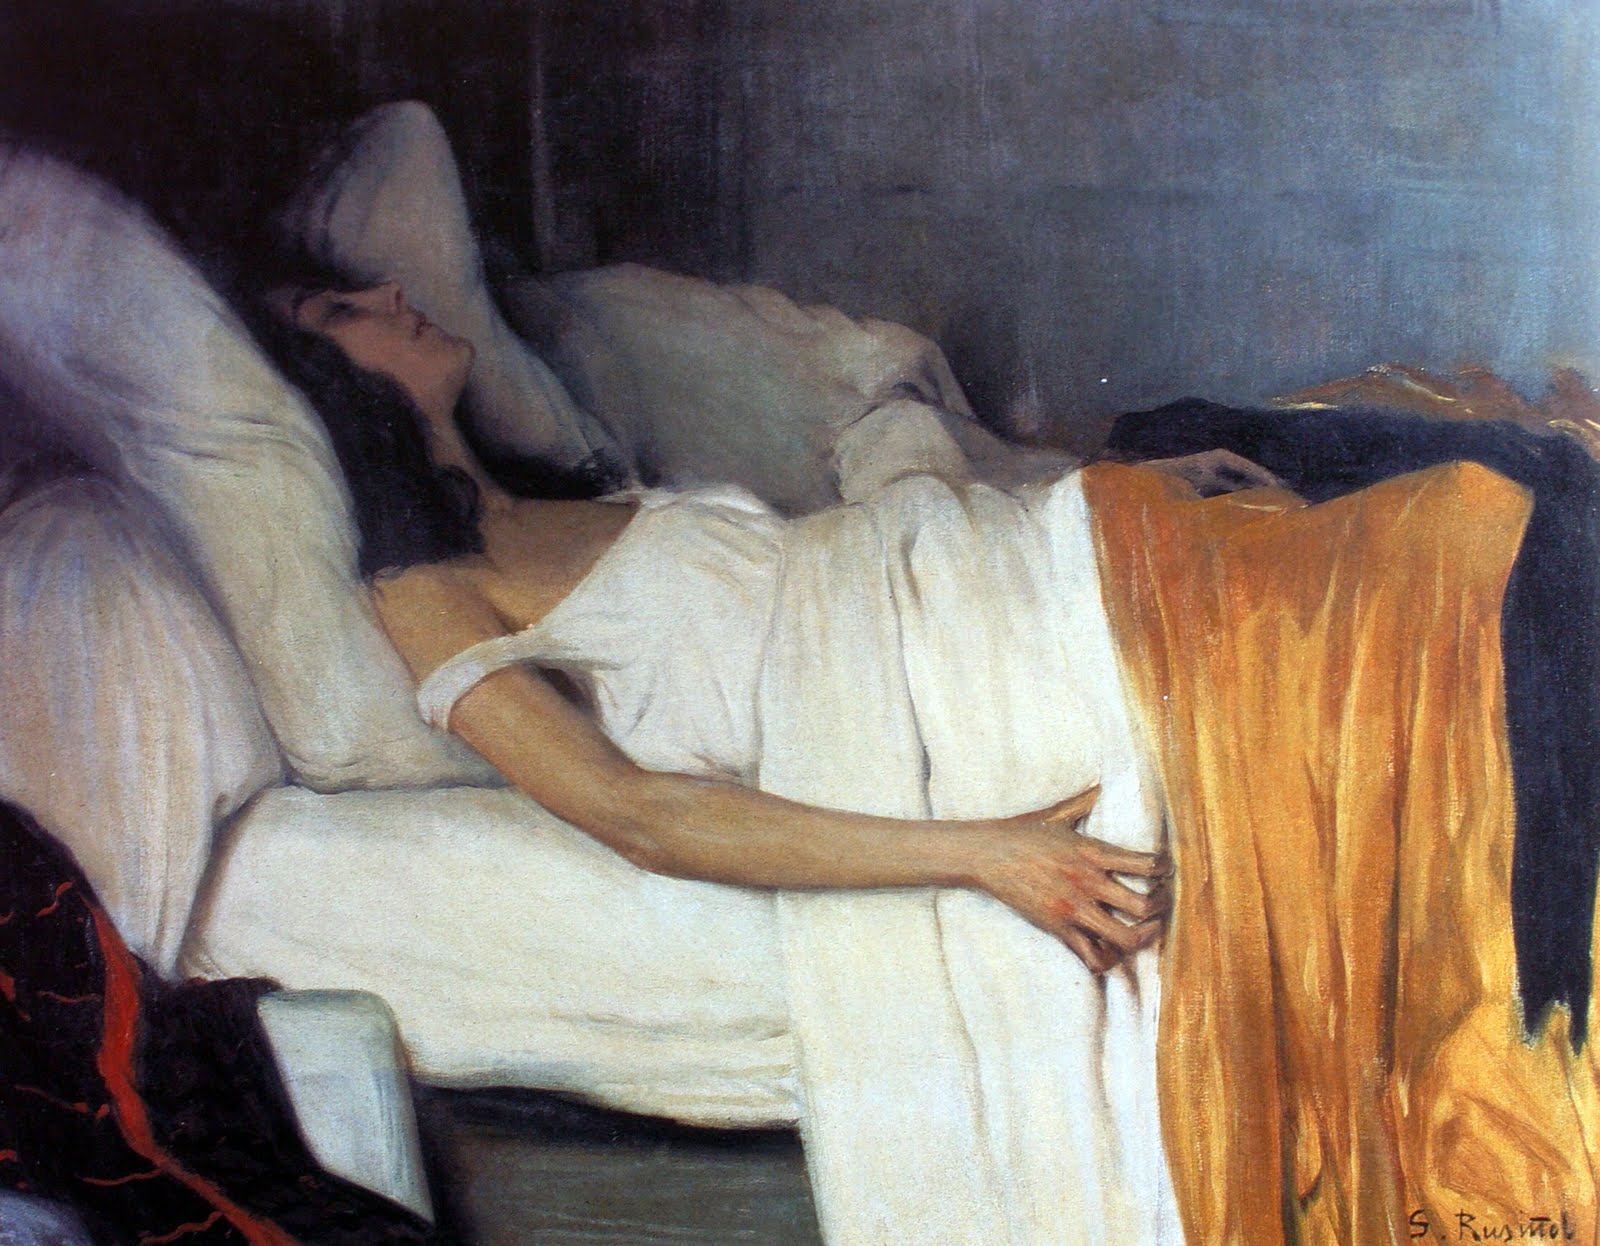 모르핀과 여인 by Santiago Rusiñol - 1894 - 87.8 x 115.2 cm 